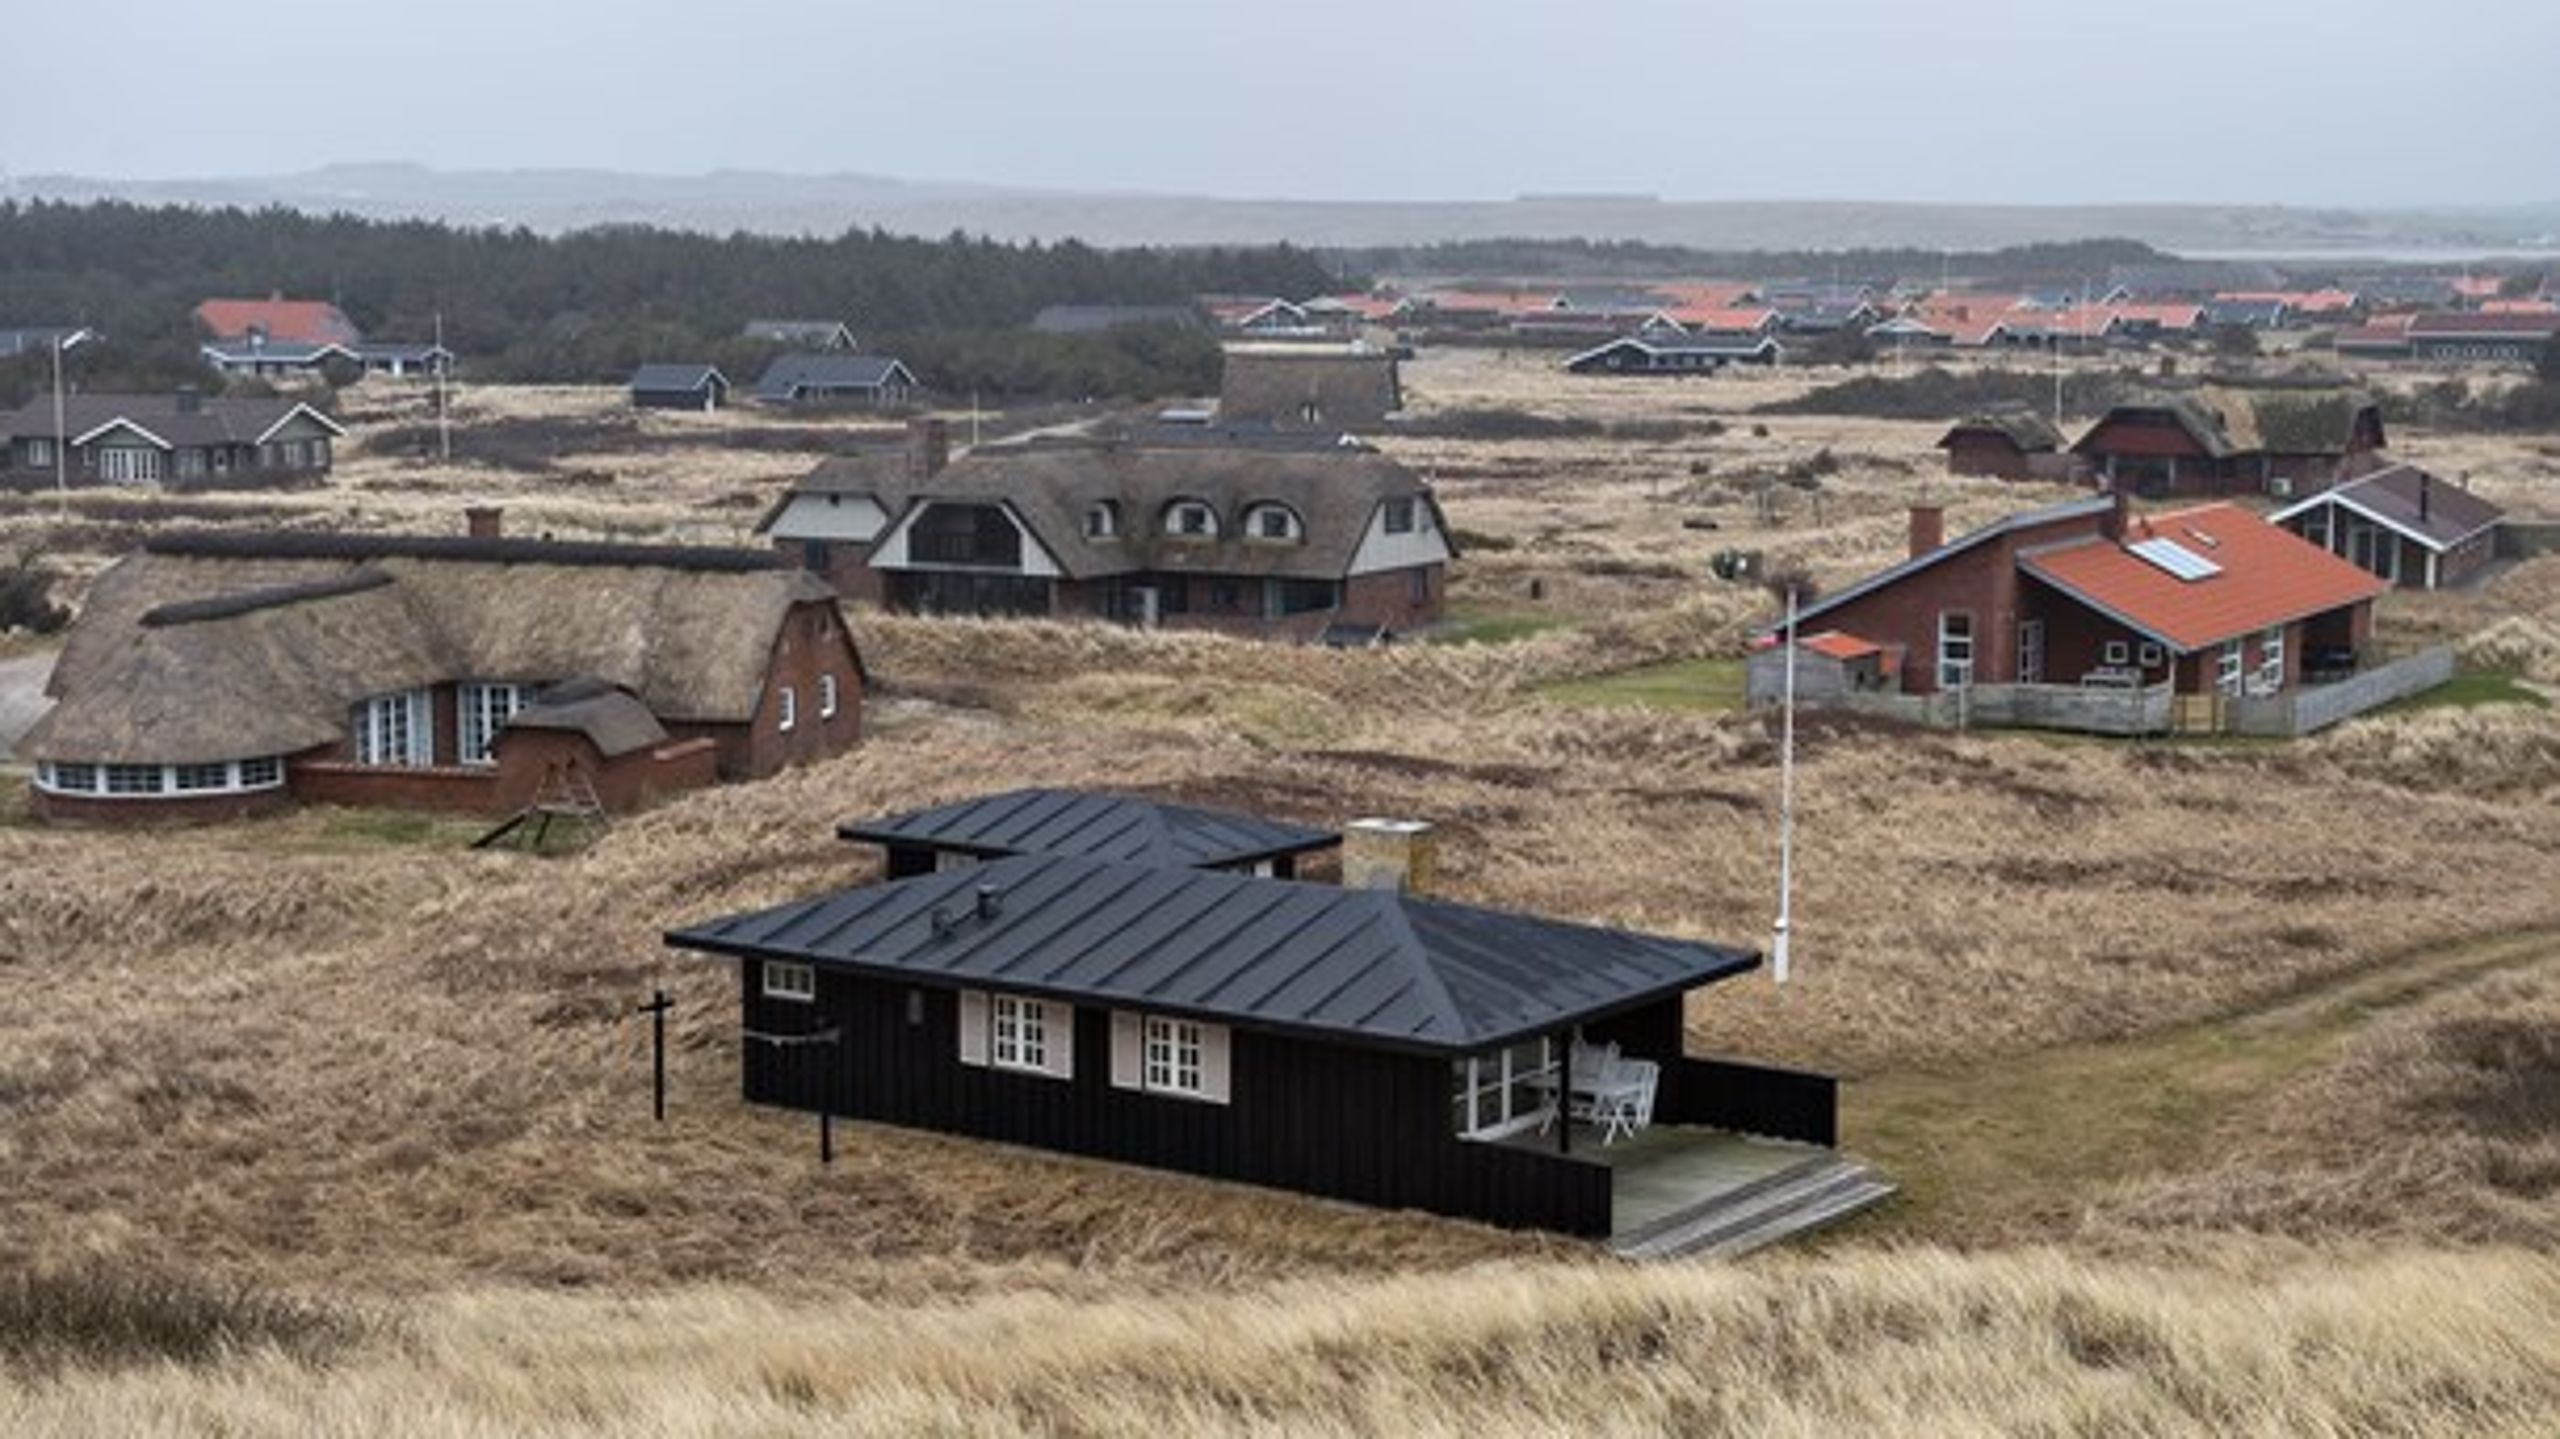 Cirka halvdelen af de udenlandske turister, der besøger Danmark, bor i feriehuse. Derfor finder flere af landets store sommerhuskommuner langs Vestkysten det naturligt, at turistorganisationen VisitDenmark flytter til Jylland.